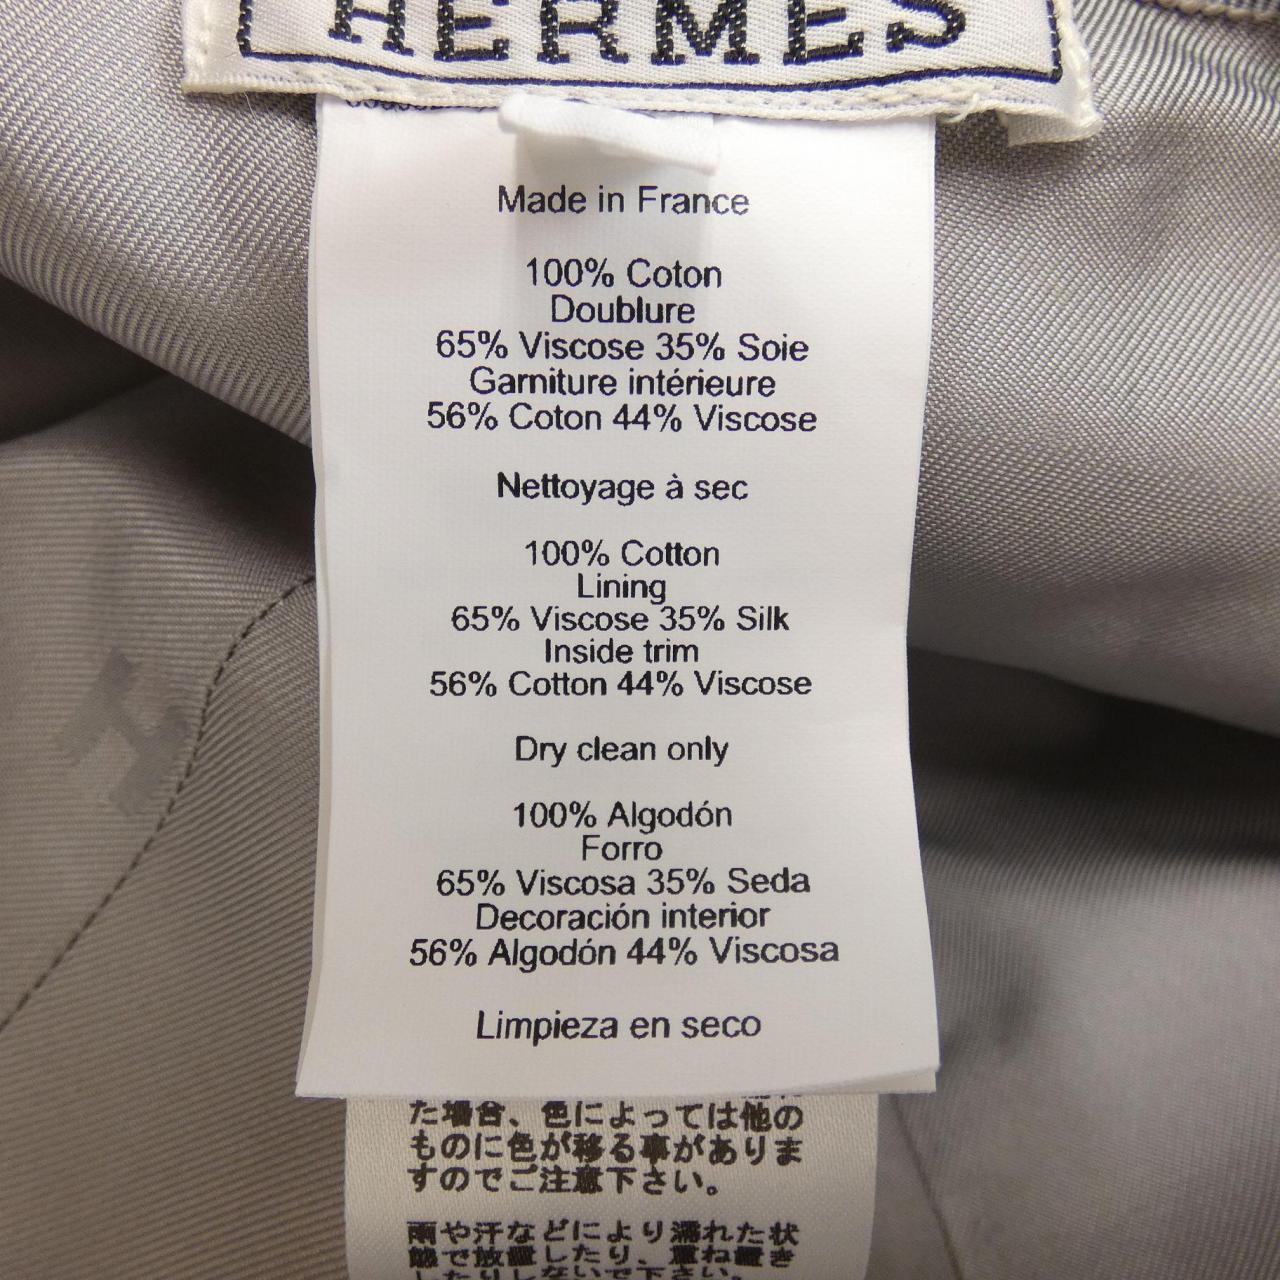 HERMES Cap HERMES